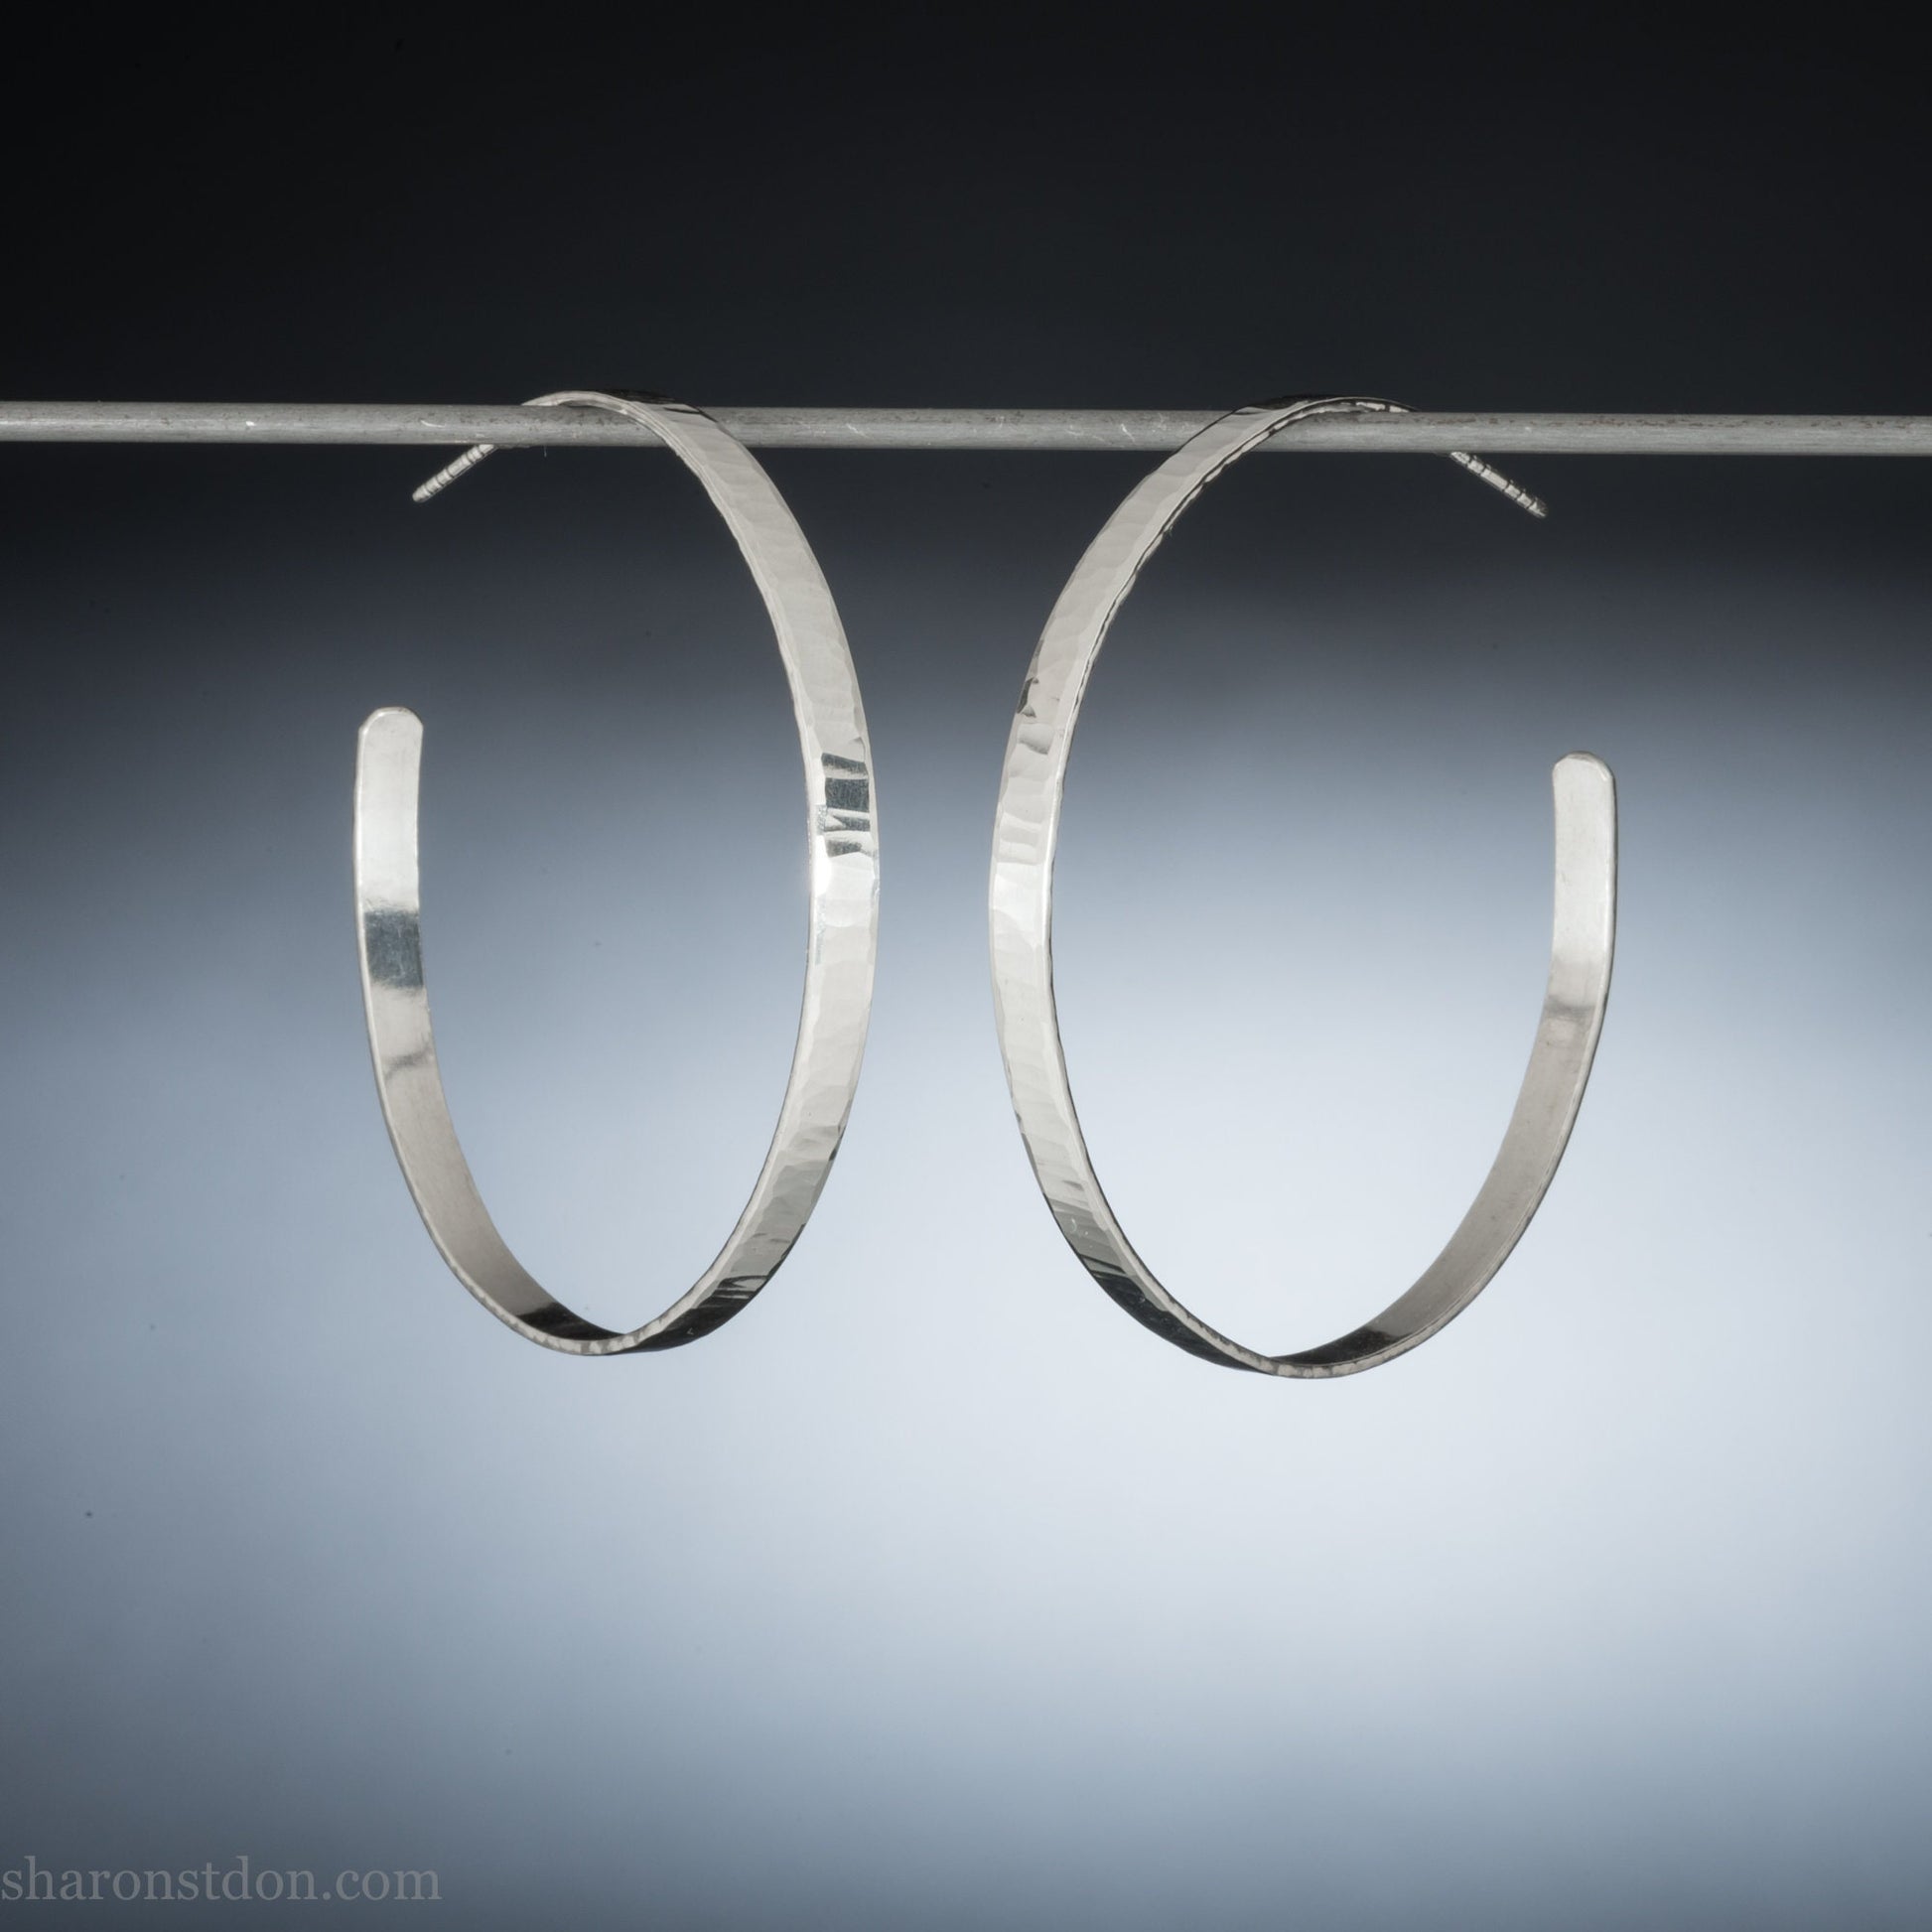 Handmade 925 sterling silver hoop earrings for women. Shiny hammered silver hoop earrings with wavy texture. 55mm diameter.